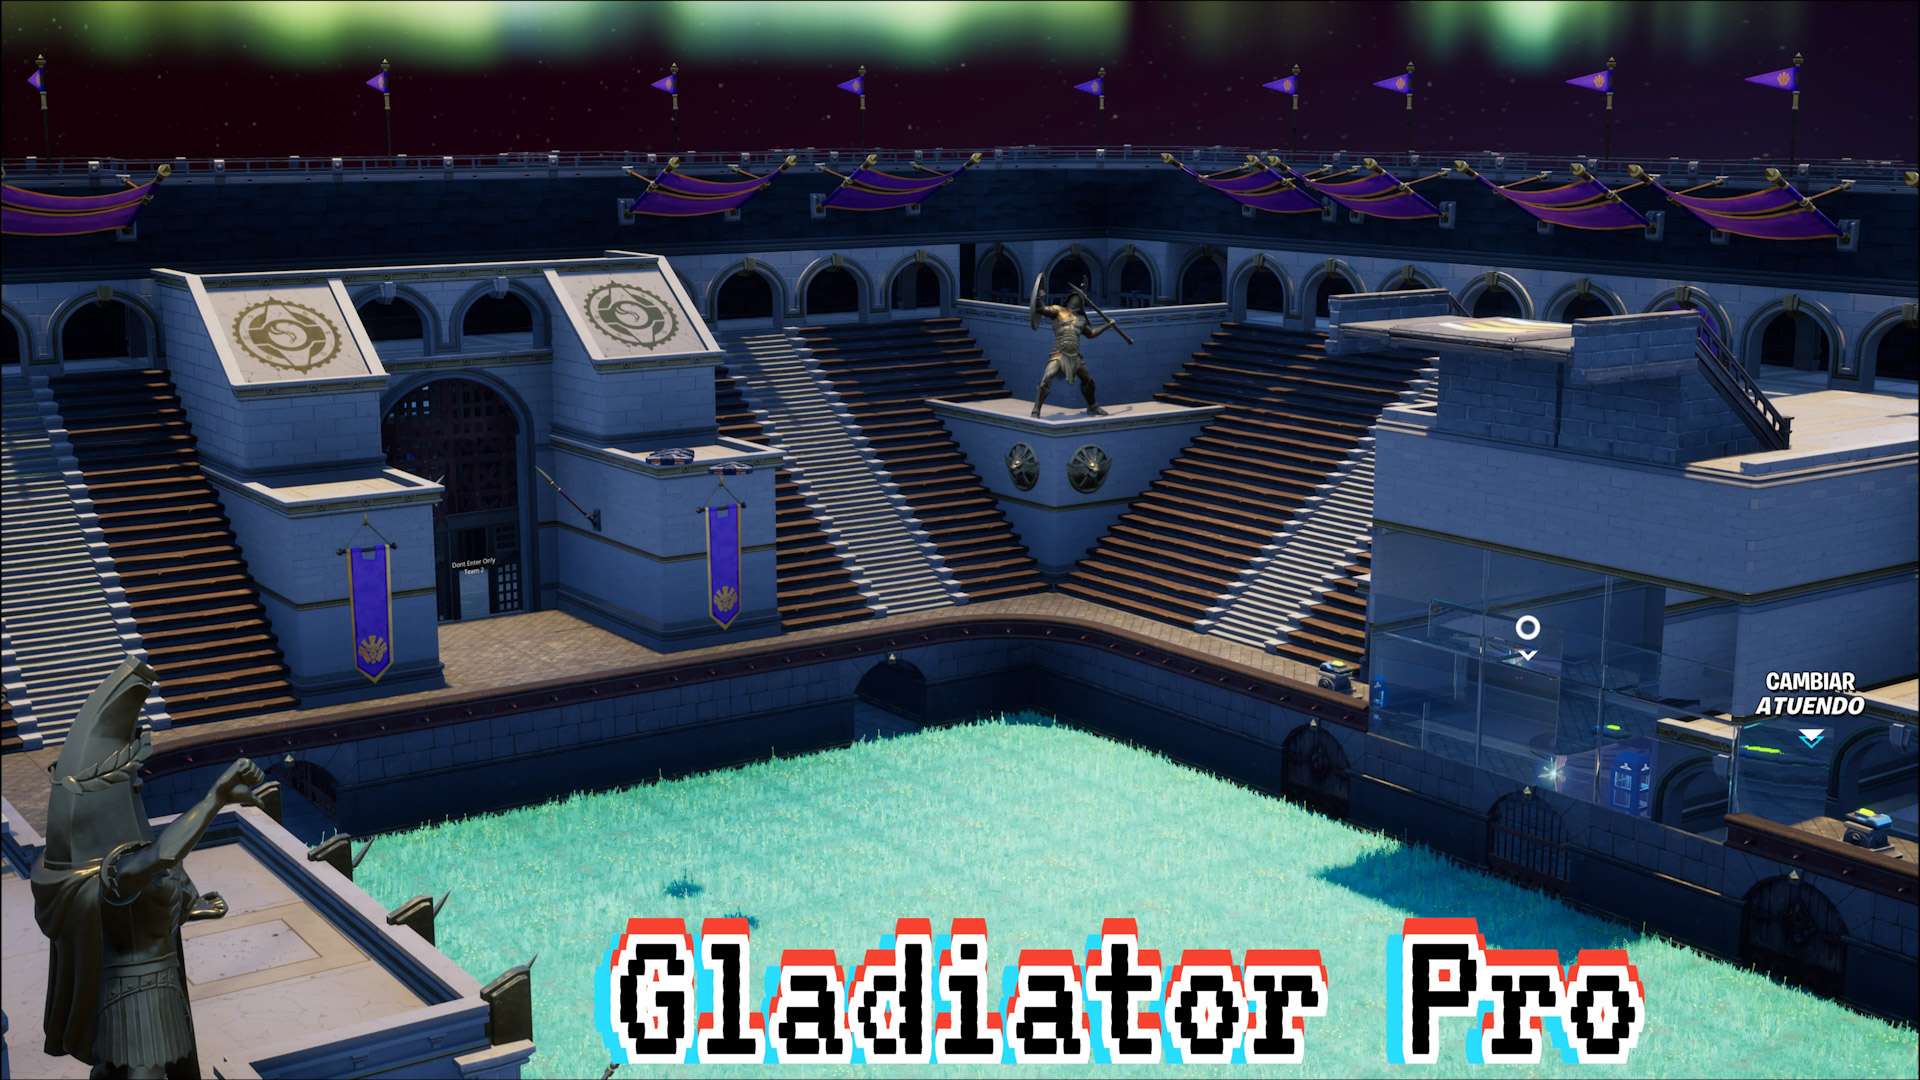 Gladiator Pro Coliseo